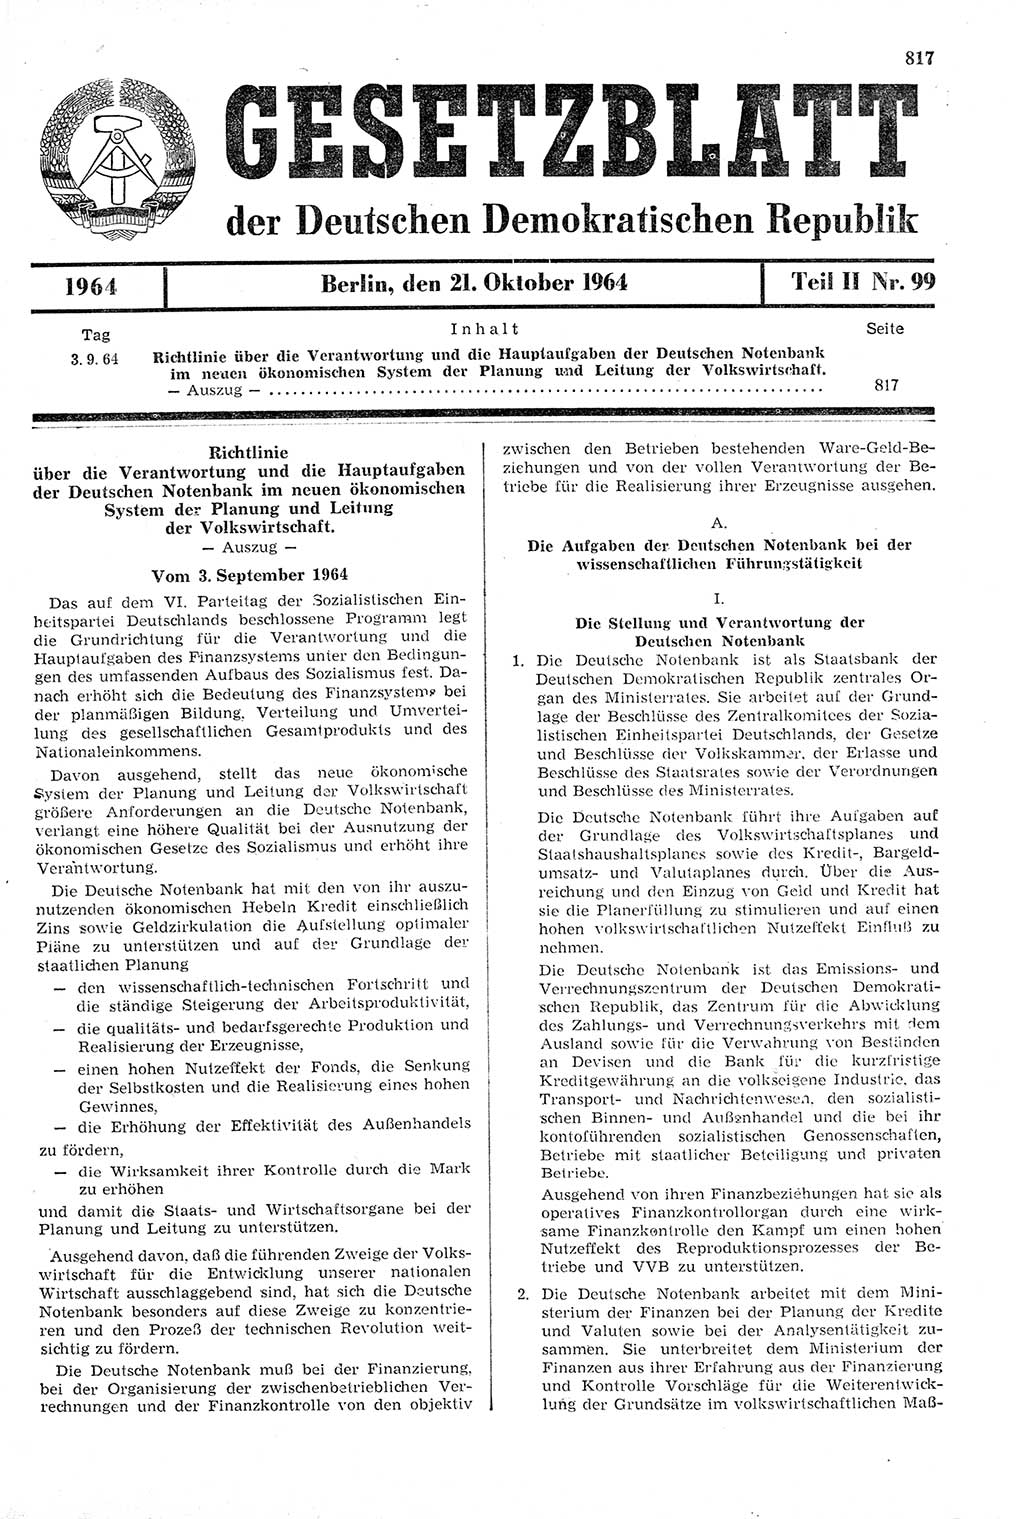 Gesetzblatt (GBl.) der Deutschen Demokratischen Republik (DDR) Teil ⅠⅠ 1964, Seite 817 (GBl. DDR ⅠⅠ 1964, S. 817)